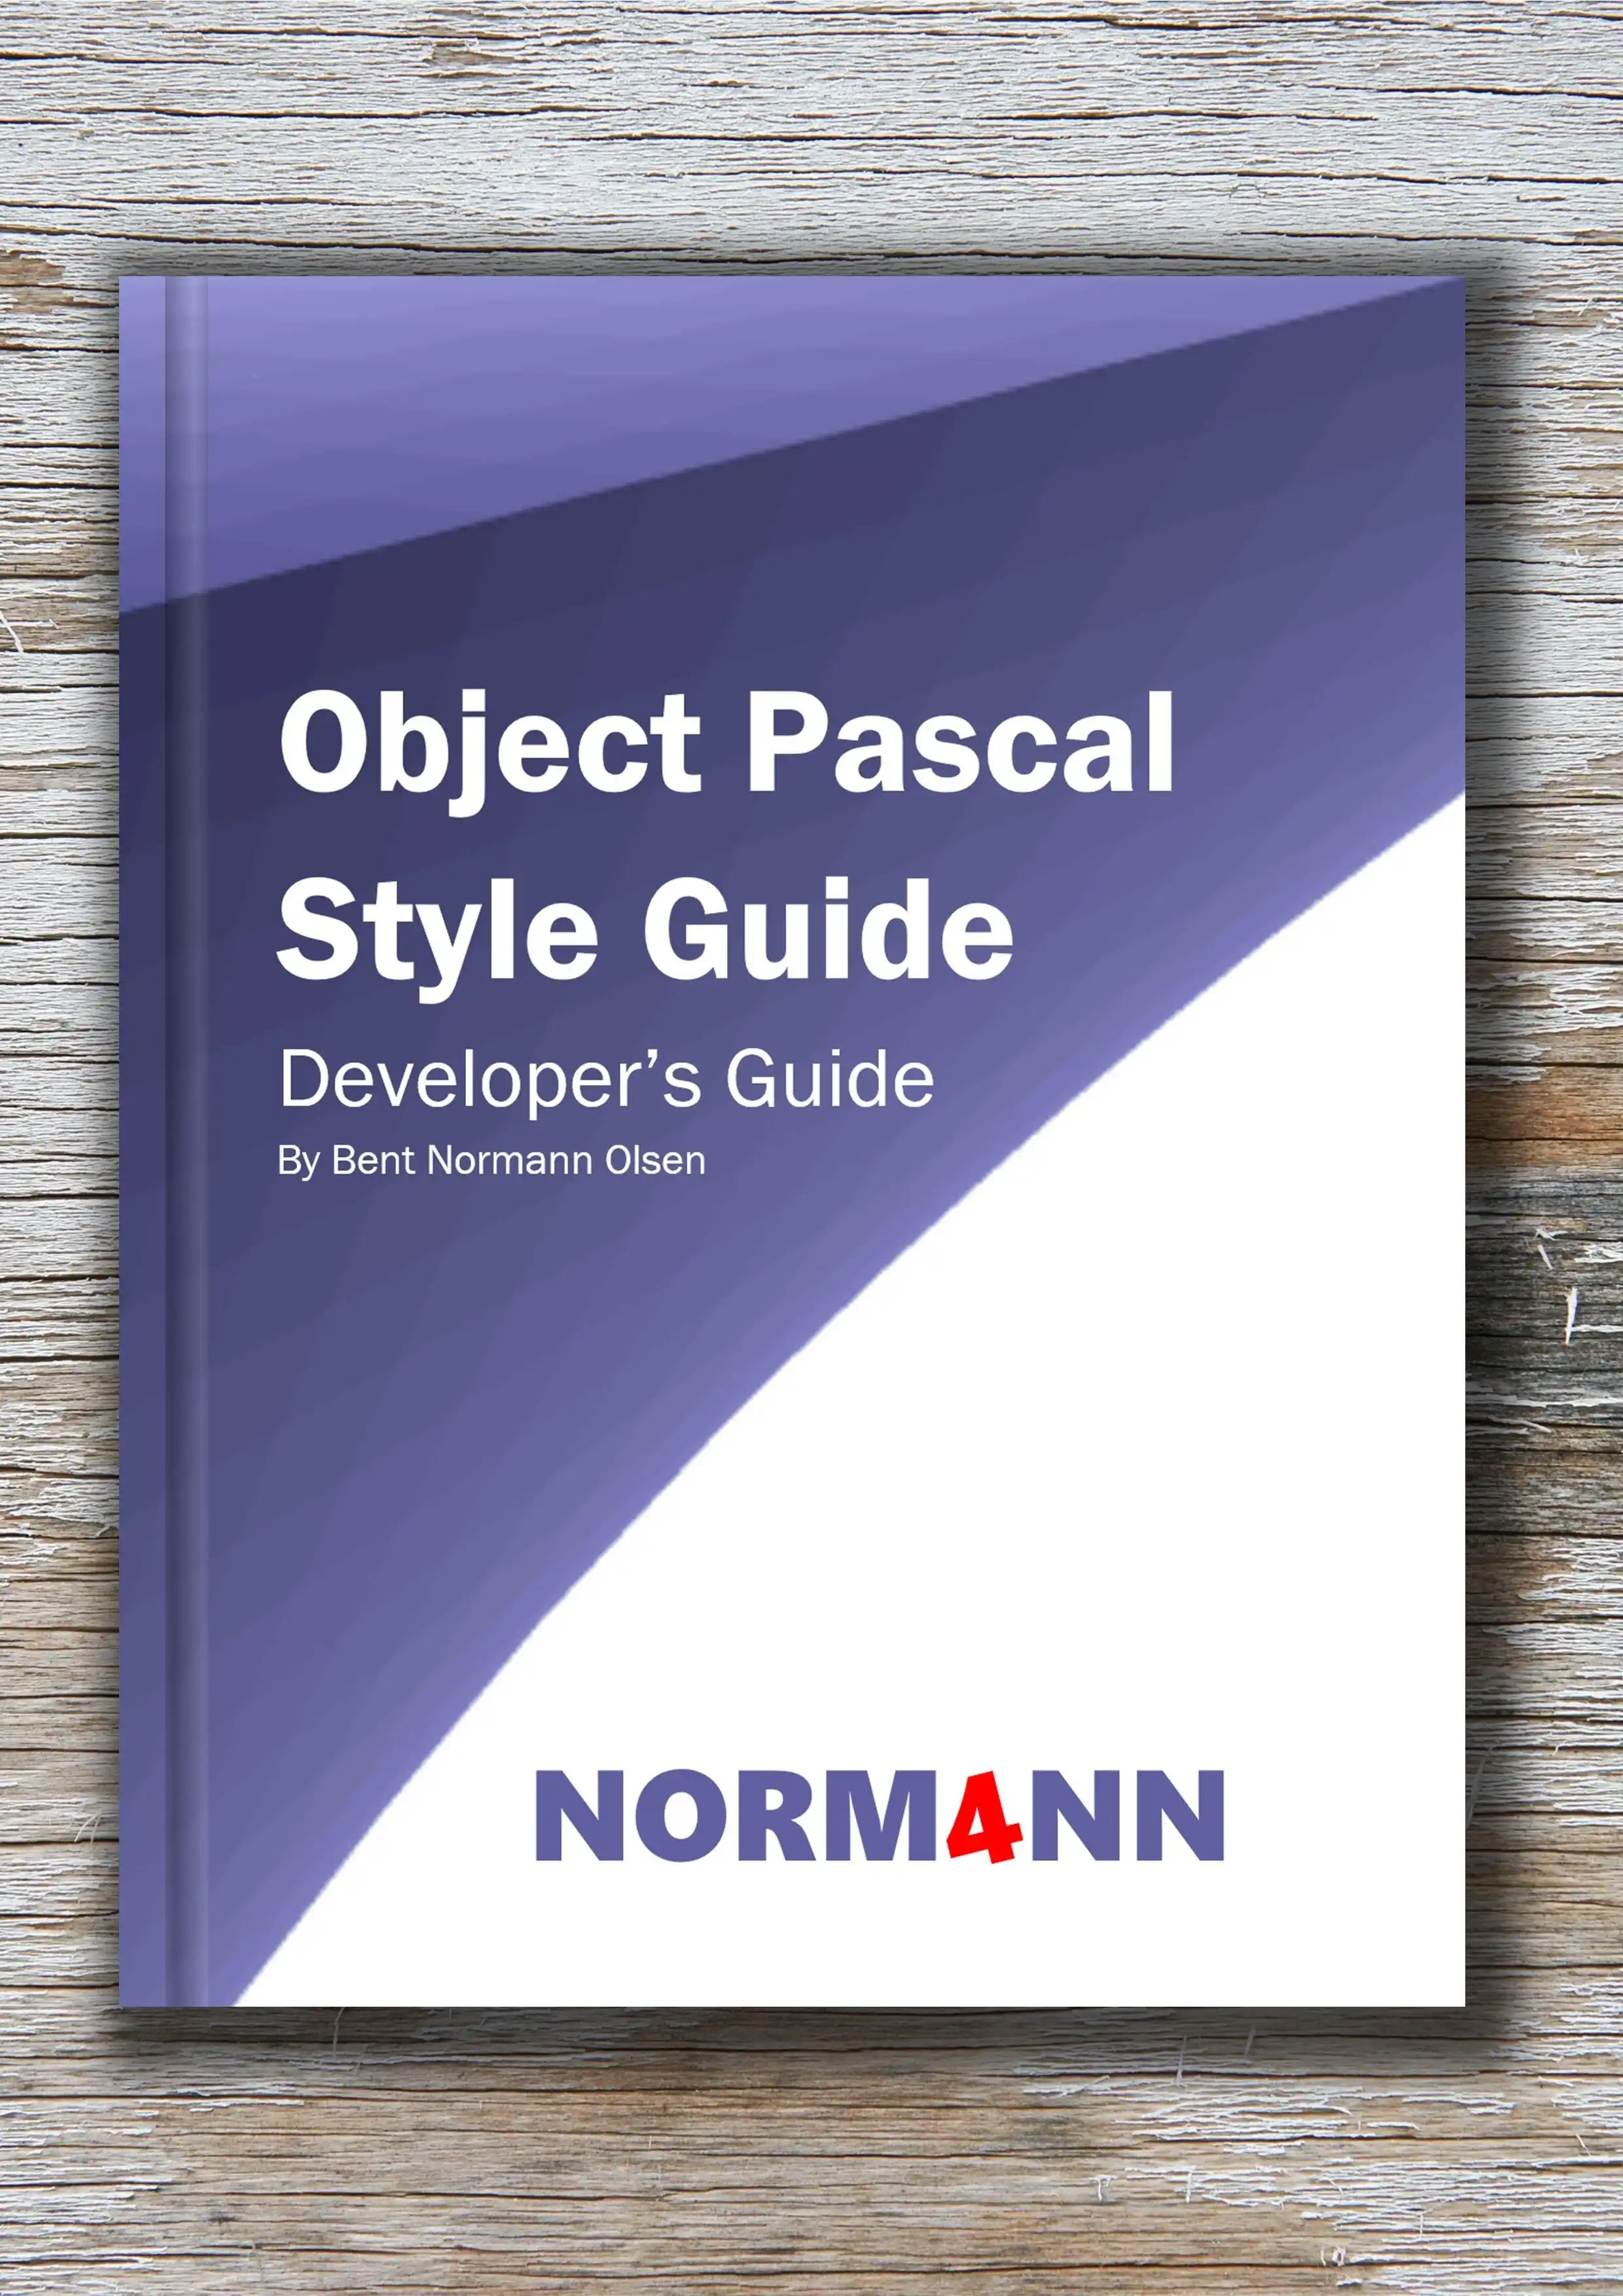 Загрузить Руководство по веб-инструменту или веб-приложению в Руководстве по стилю Object Pascal